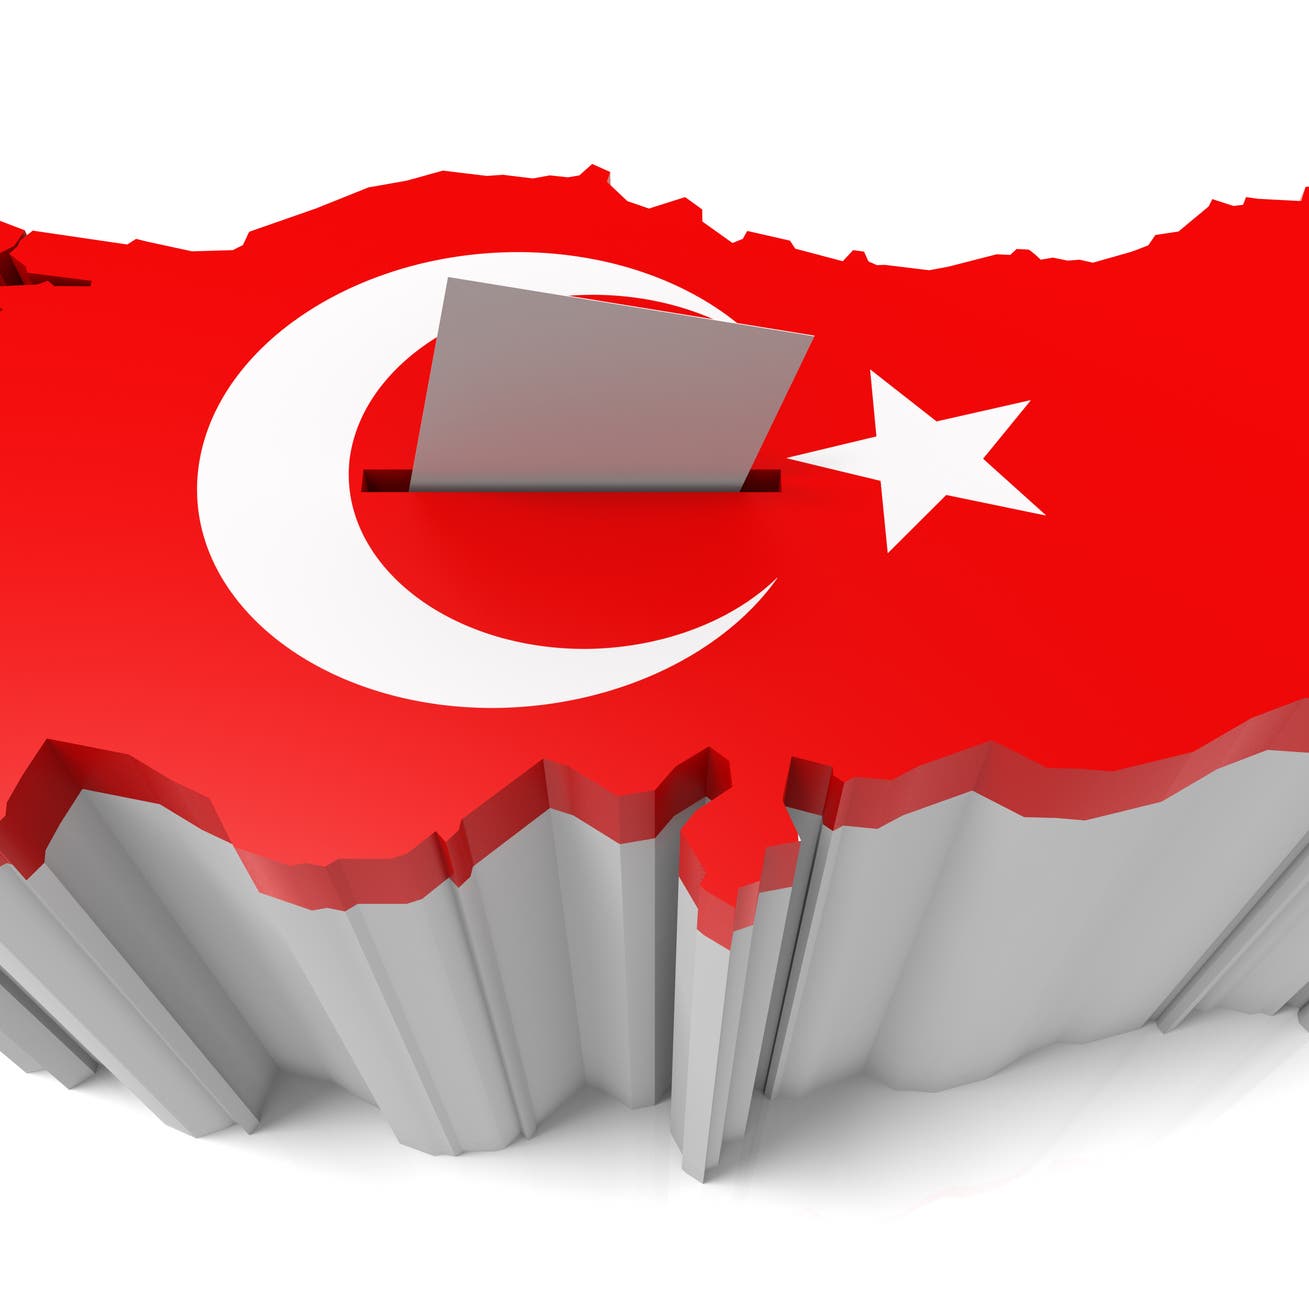 لماذا يتحكم الاقتصاد في تحديد الفائز برئاسة تركيا؟